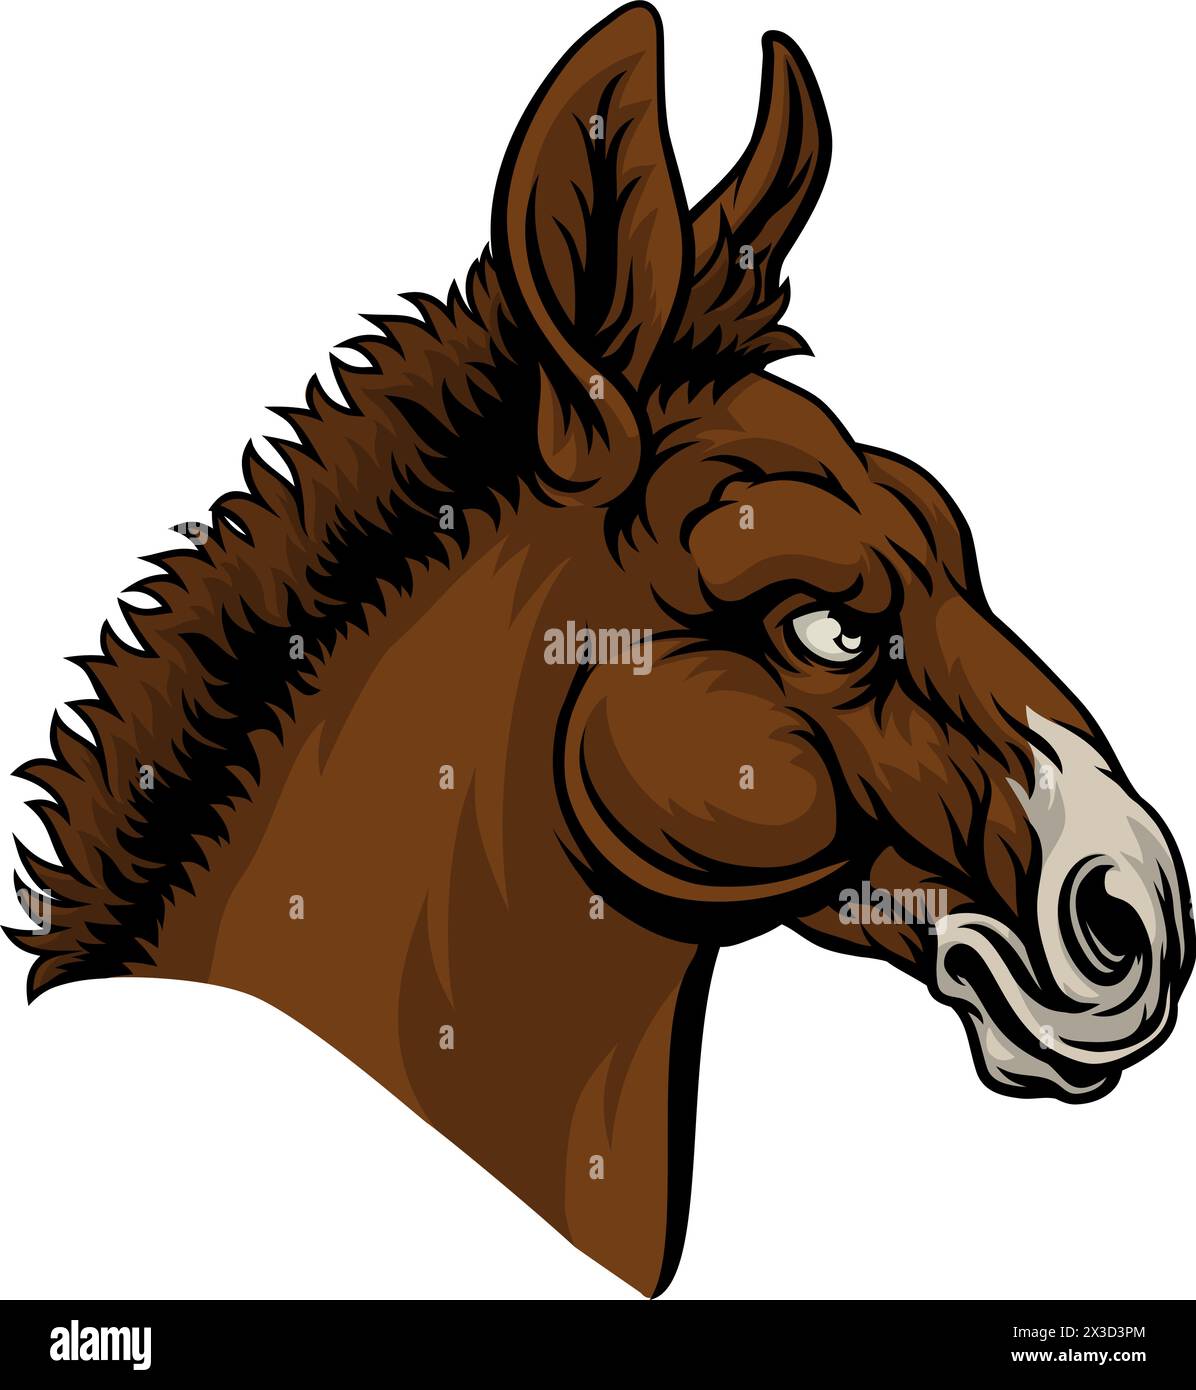 Démocrate Donkey Election Parti politique politique Illustration de Vecteur